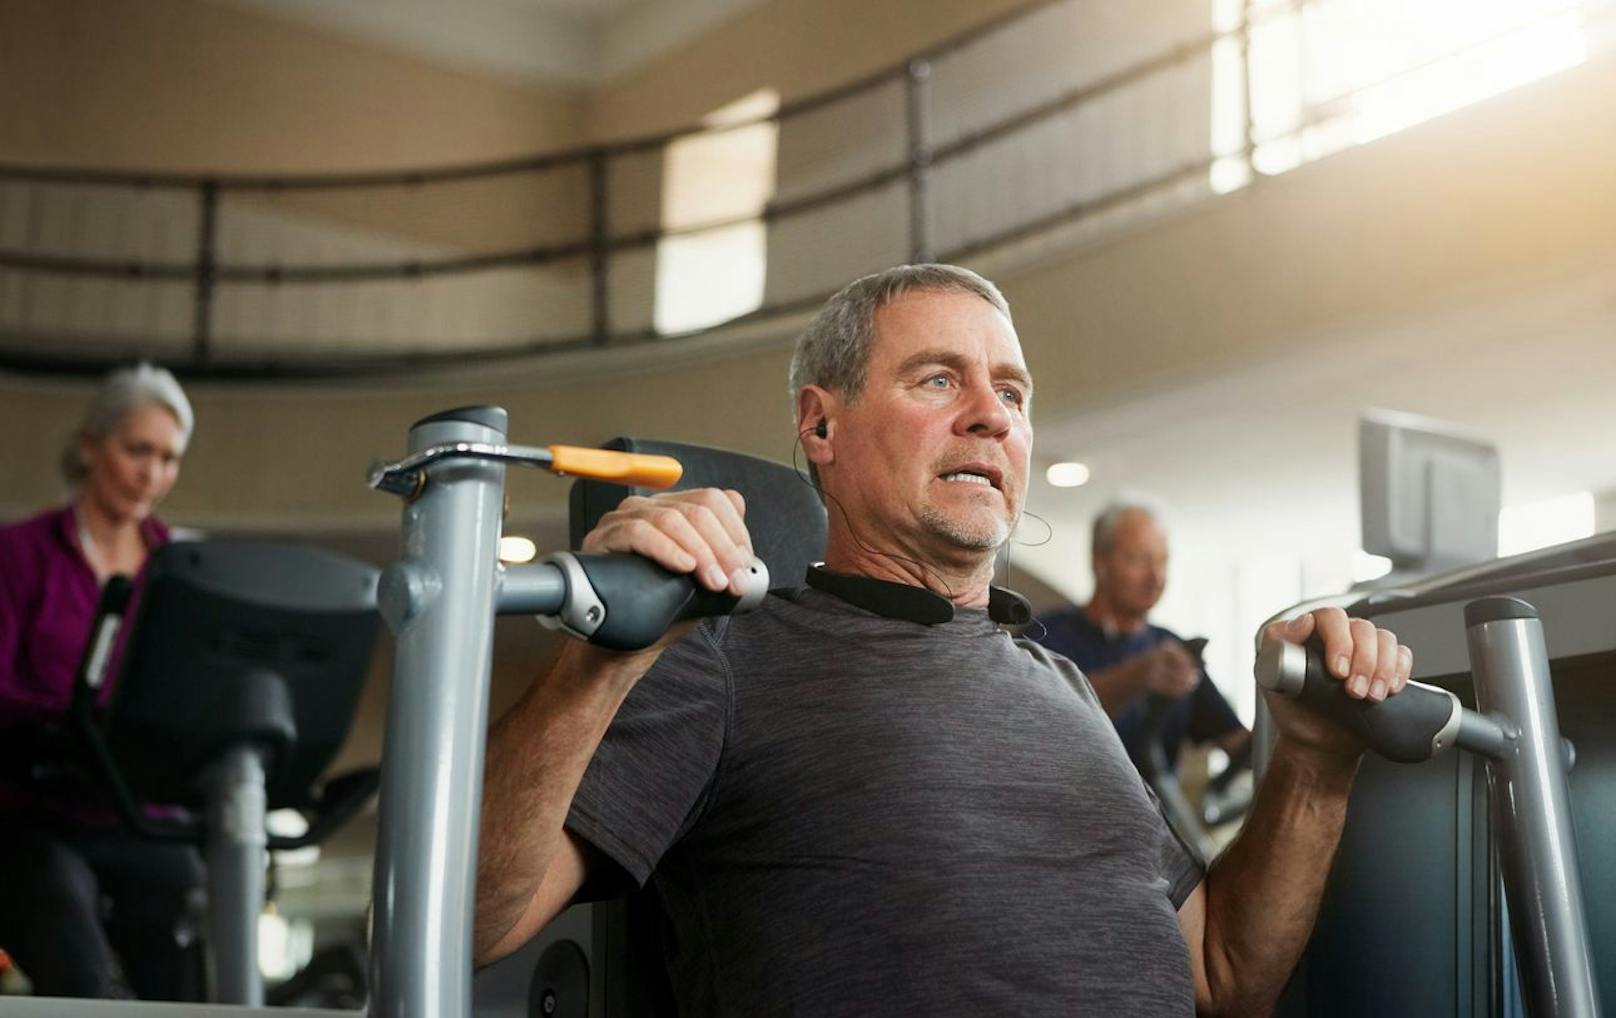 Du nimmst aufgrund deines veränderten Stoffwechsels zu? Das kommt leider vor, wenn man älter wird. Lass dich davon nicht einschüchtern und setze dein Training dennoch fort.